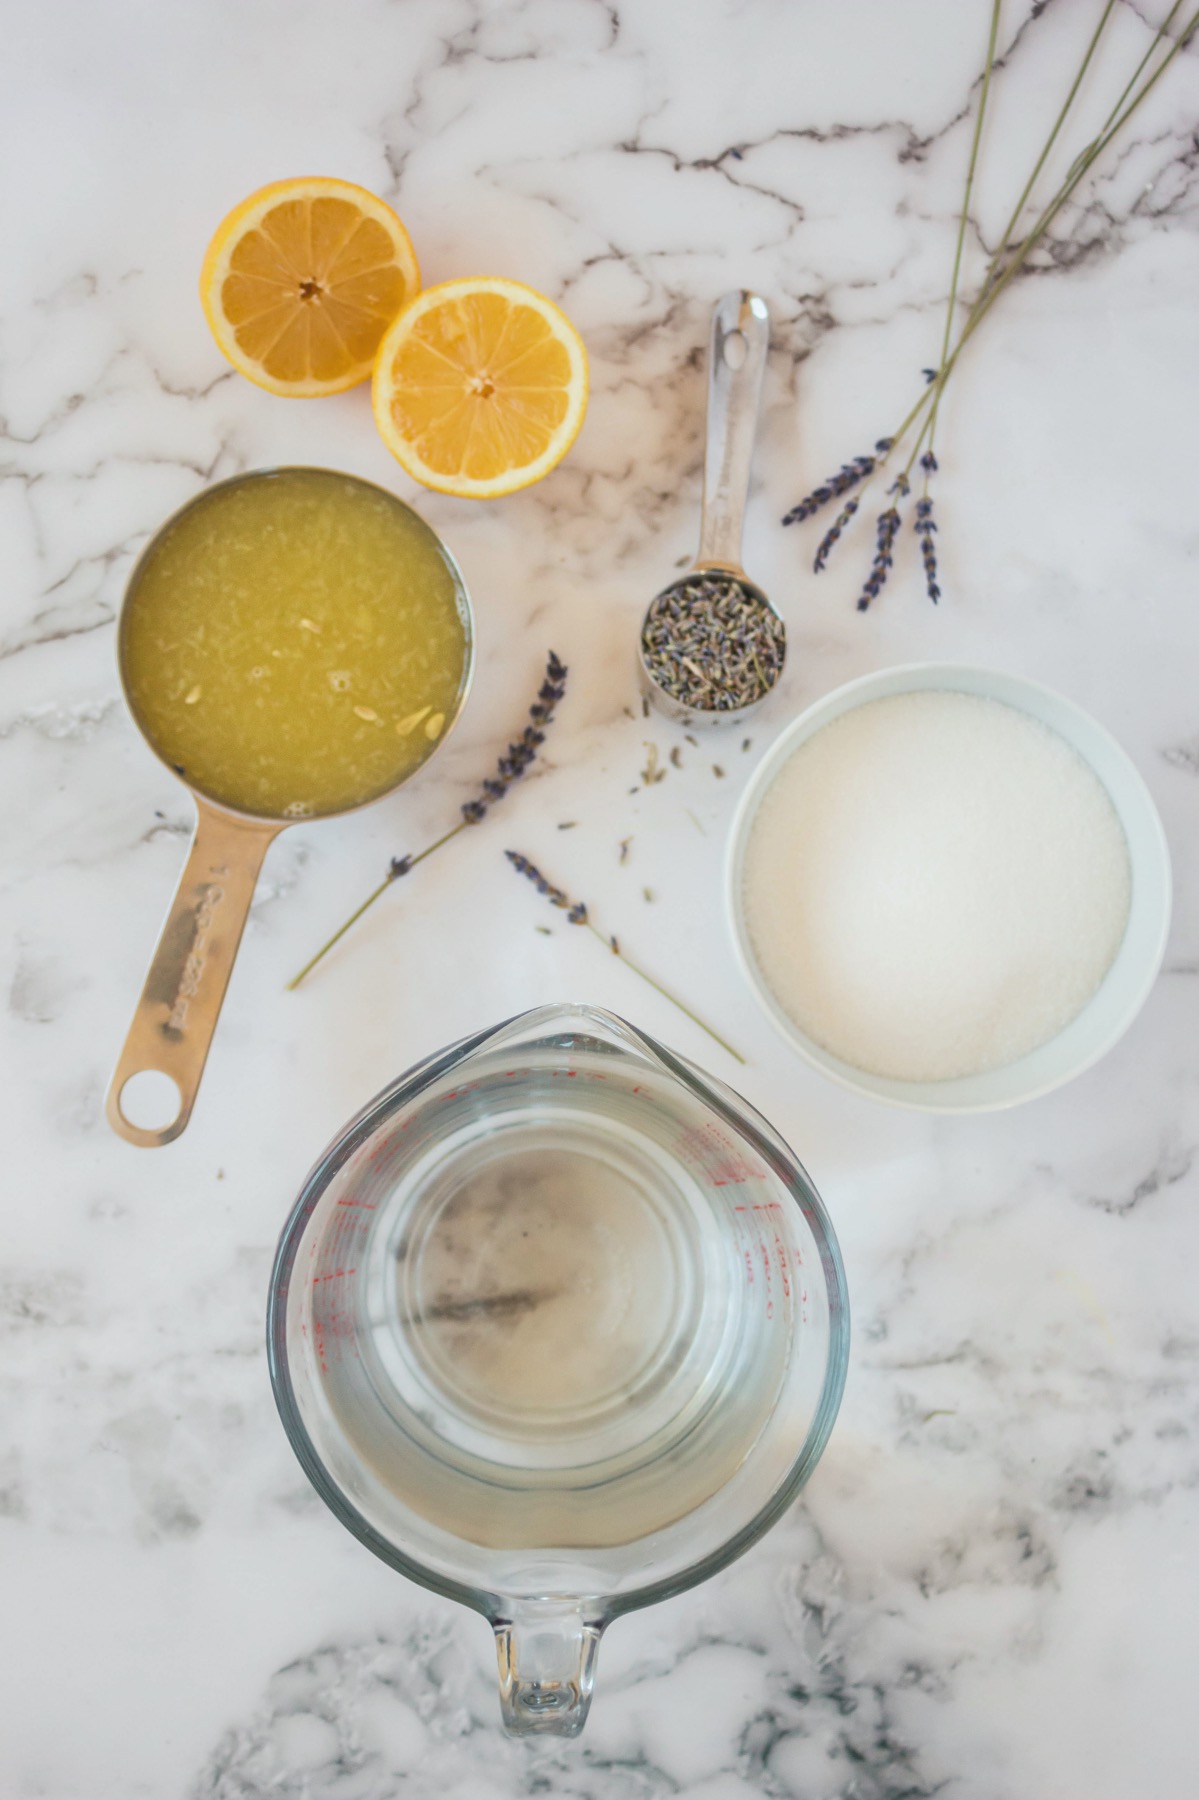 ingredients to make easy lavender lemonade recipe